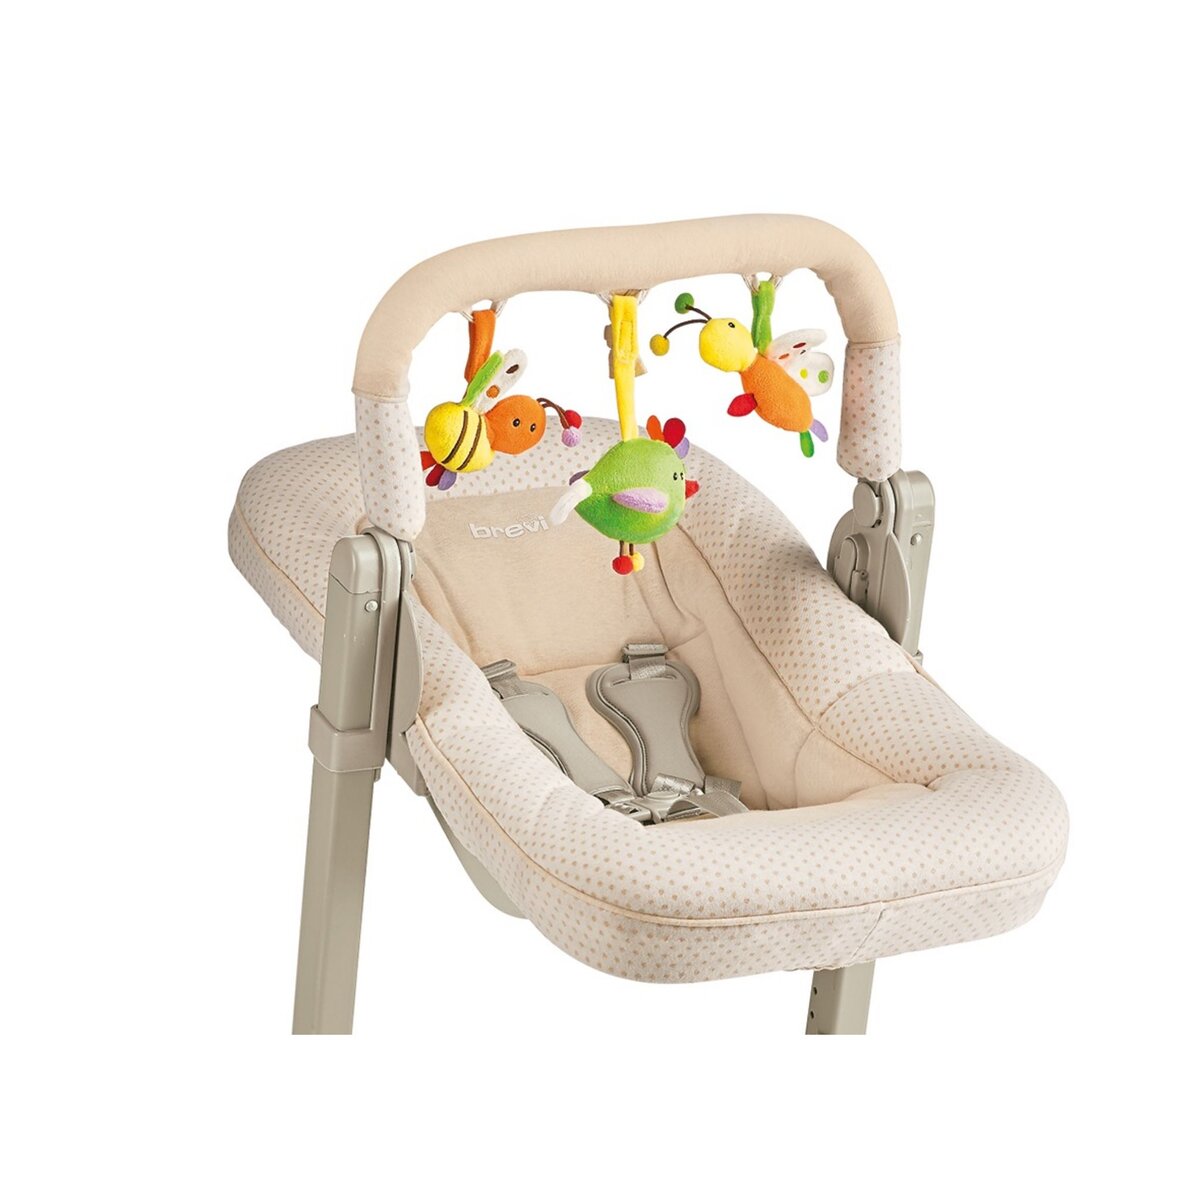 BREVI Kit transat adaptable pour chaise haute bébé Slex Evo